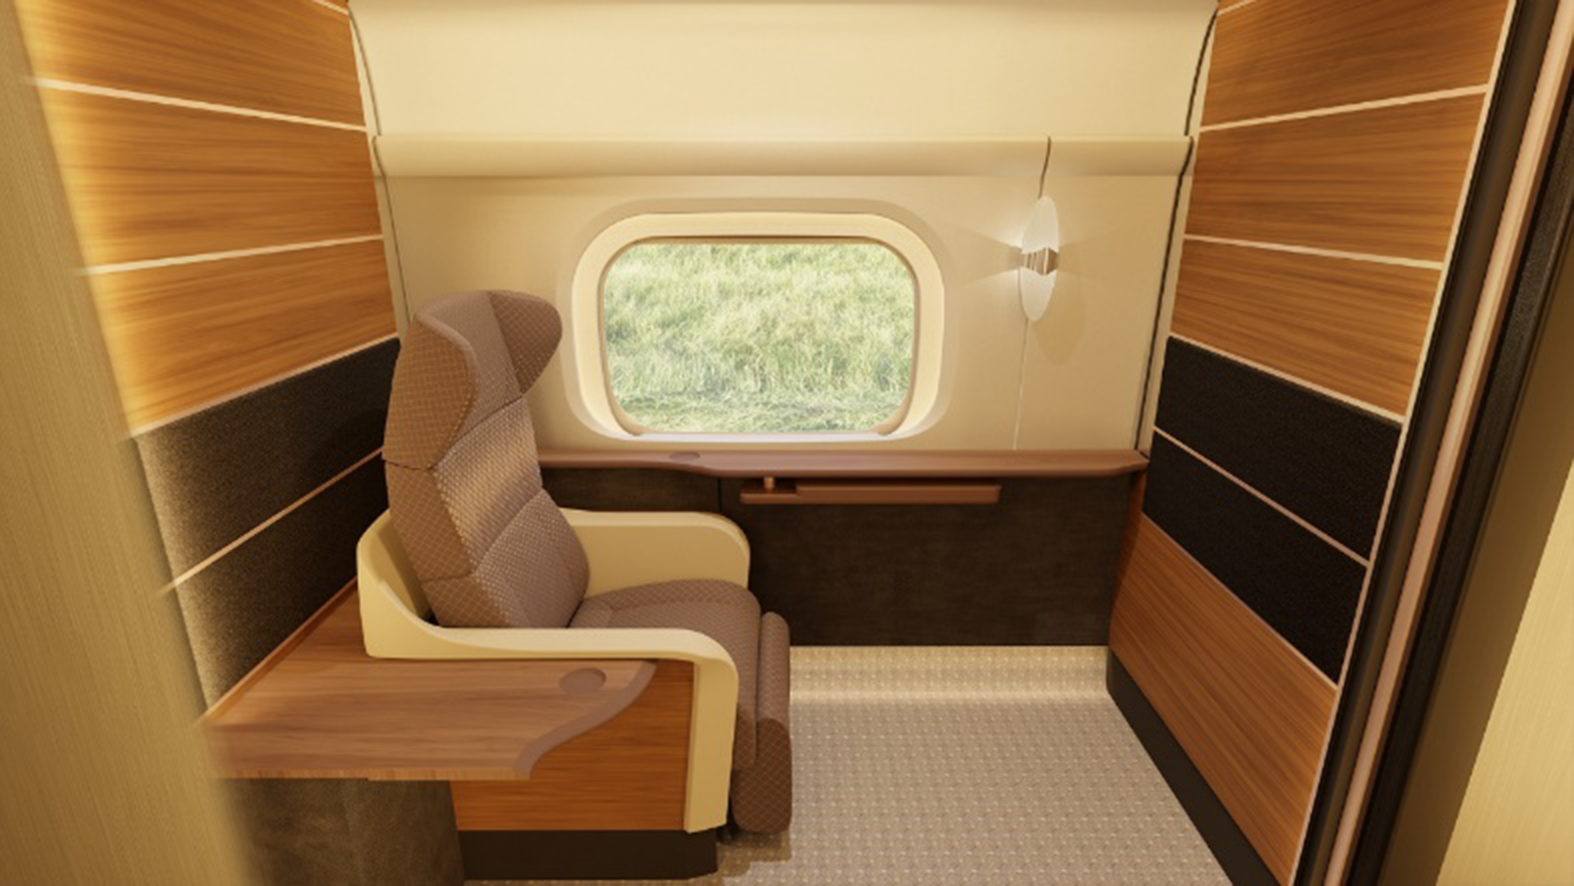 列車の個室の内部。円窓から見える自然景色、壁には扇風機、快適な座席とテーブルがある。